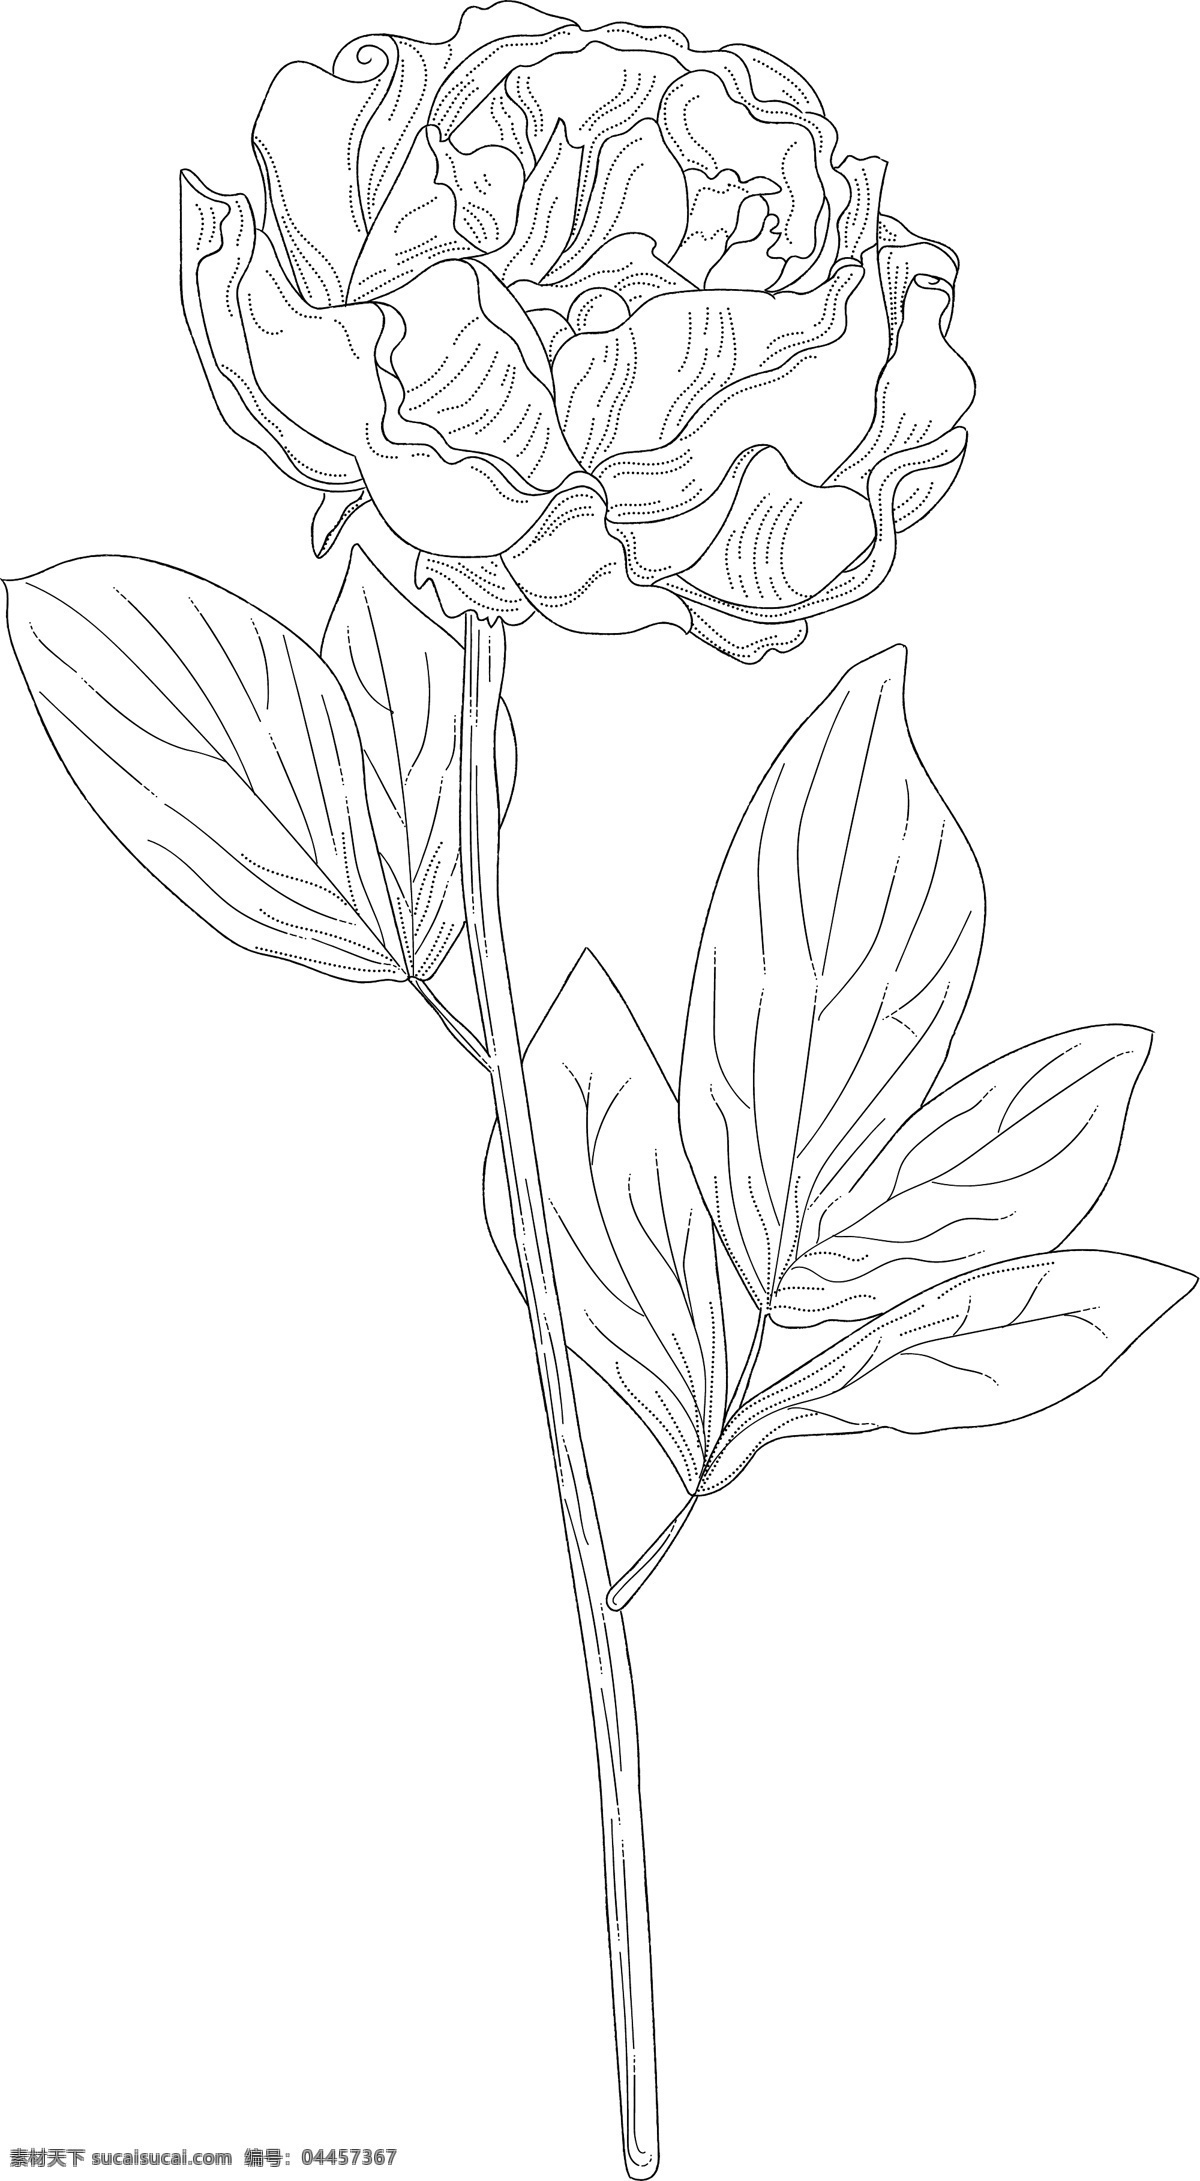 线 稿 图 绘画 植物 花朵 简笔线条 线条绘画 植物花朵 树枝 绘画线条 线稿图 巴洛克风格 文化艺术 绘画书法